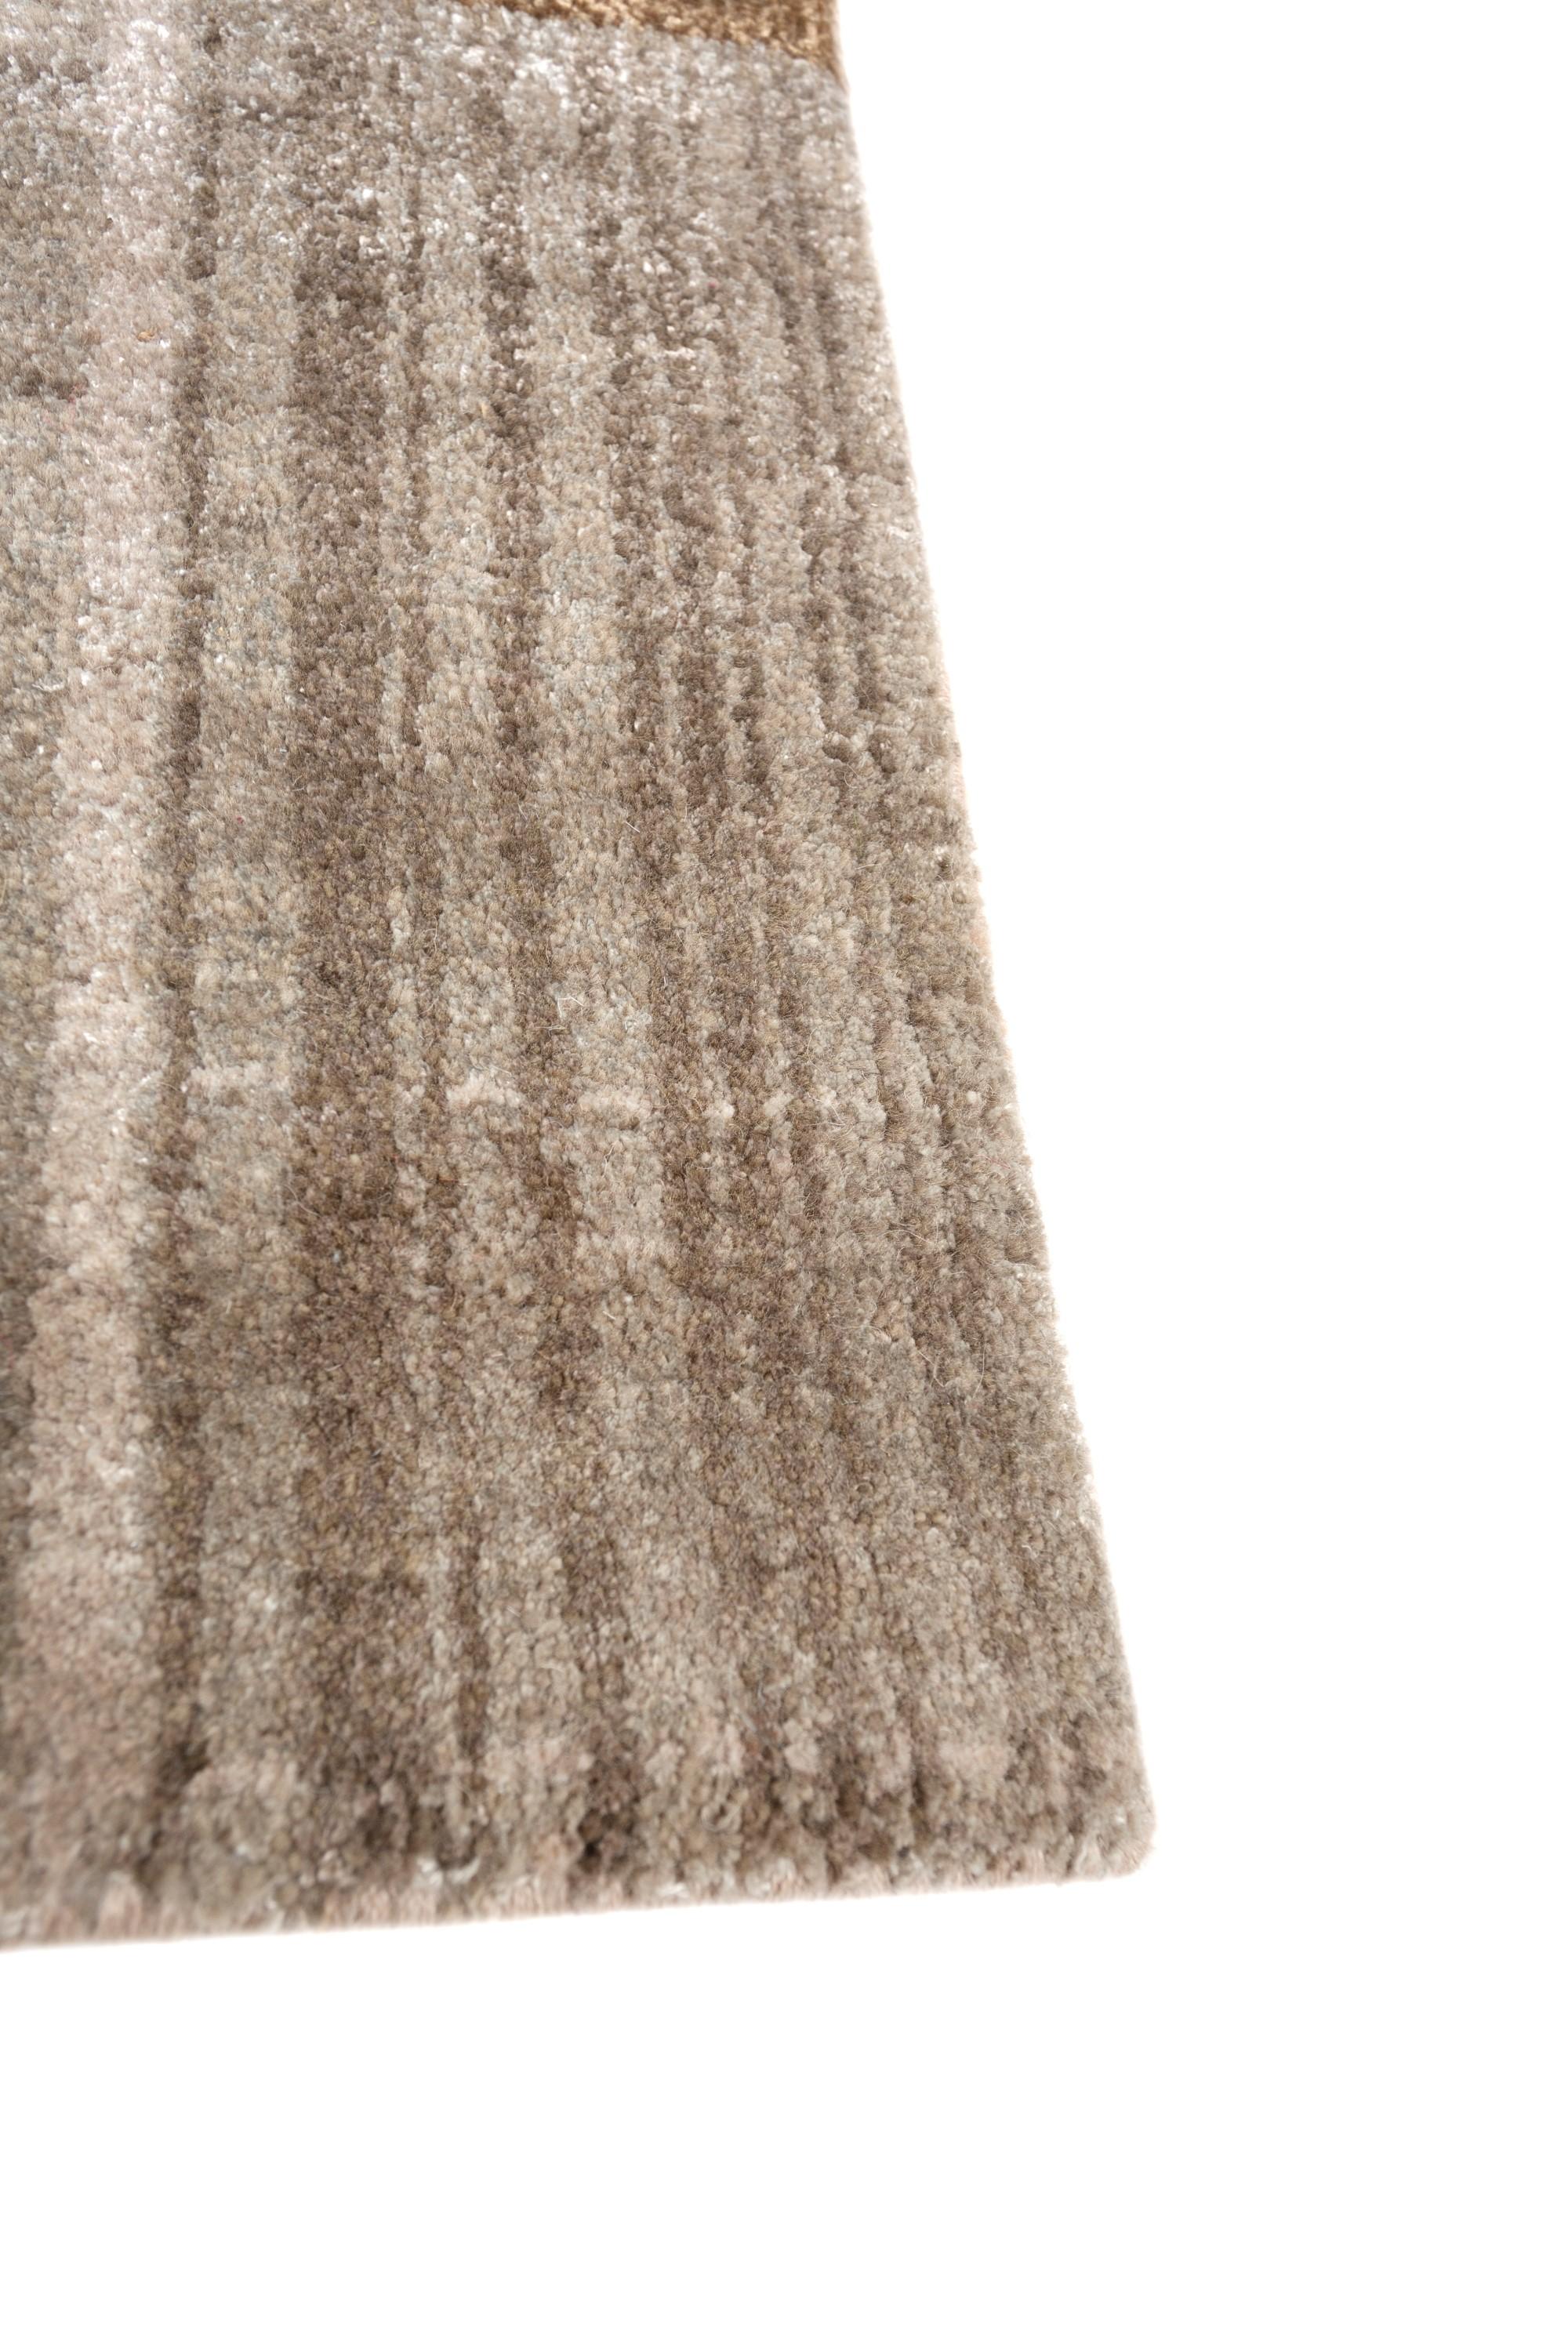 Wir stellen Ihnen diesen handgeknüpften Teppich vor, der in sorgfältiger Handarbeit im ländlichen Indien hergestellt wird. Mit einem dunklen elfenbeinfarbenen Grundton und einer Bordüre, die an reife Brombeeren erinnert, zeigt der Teppich